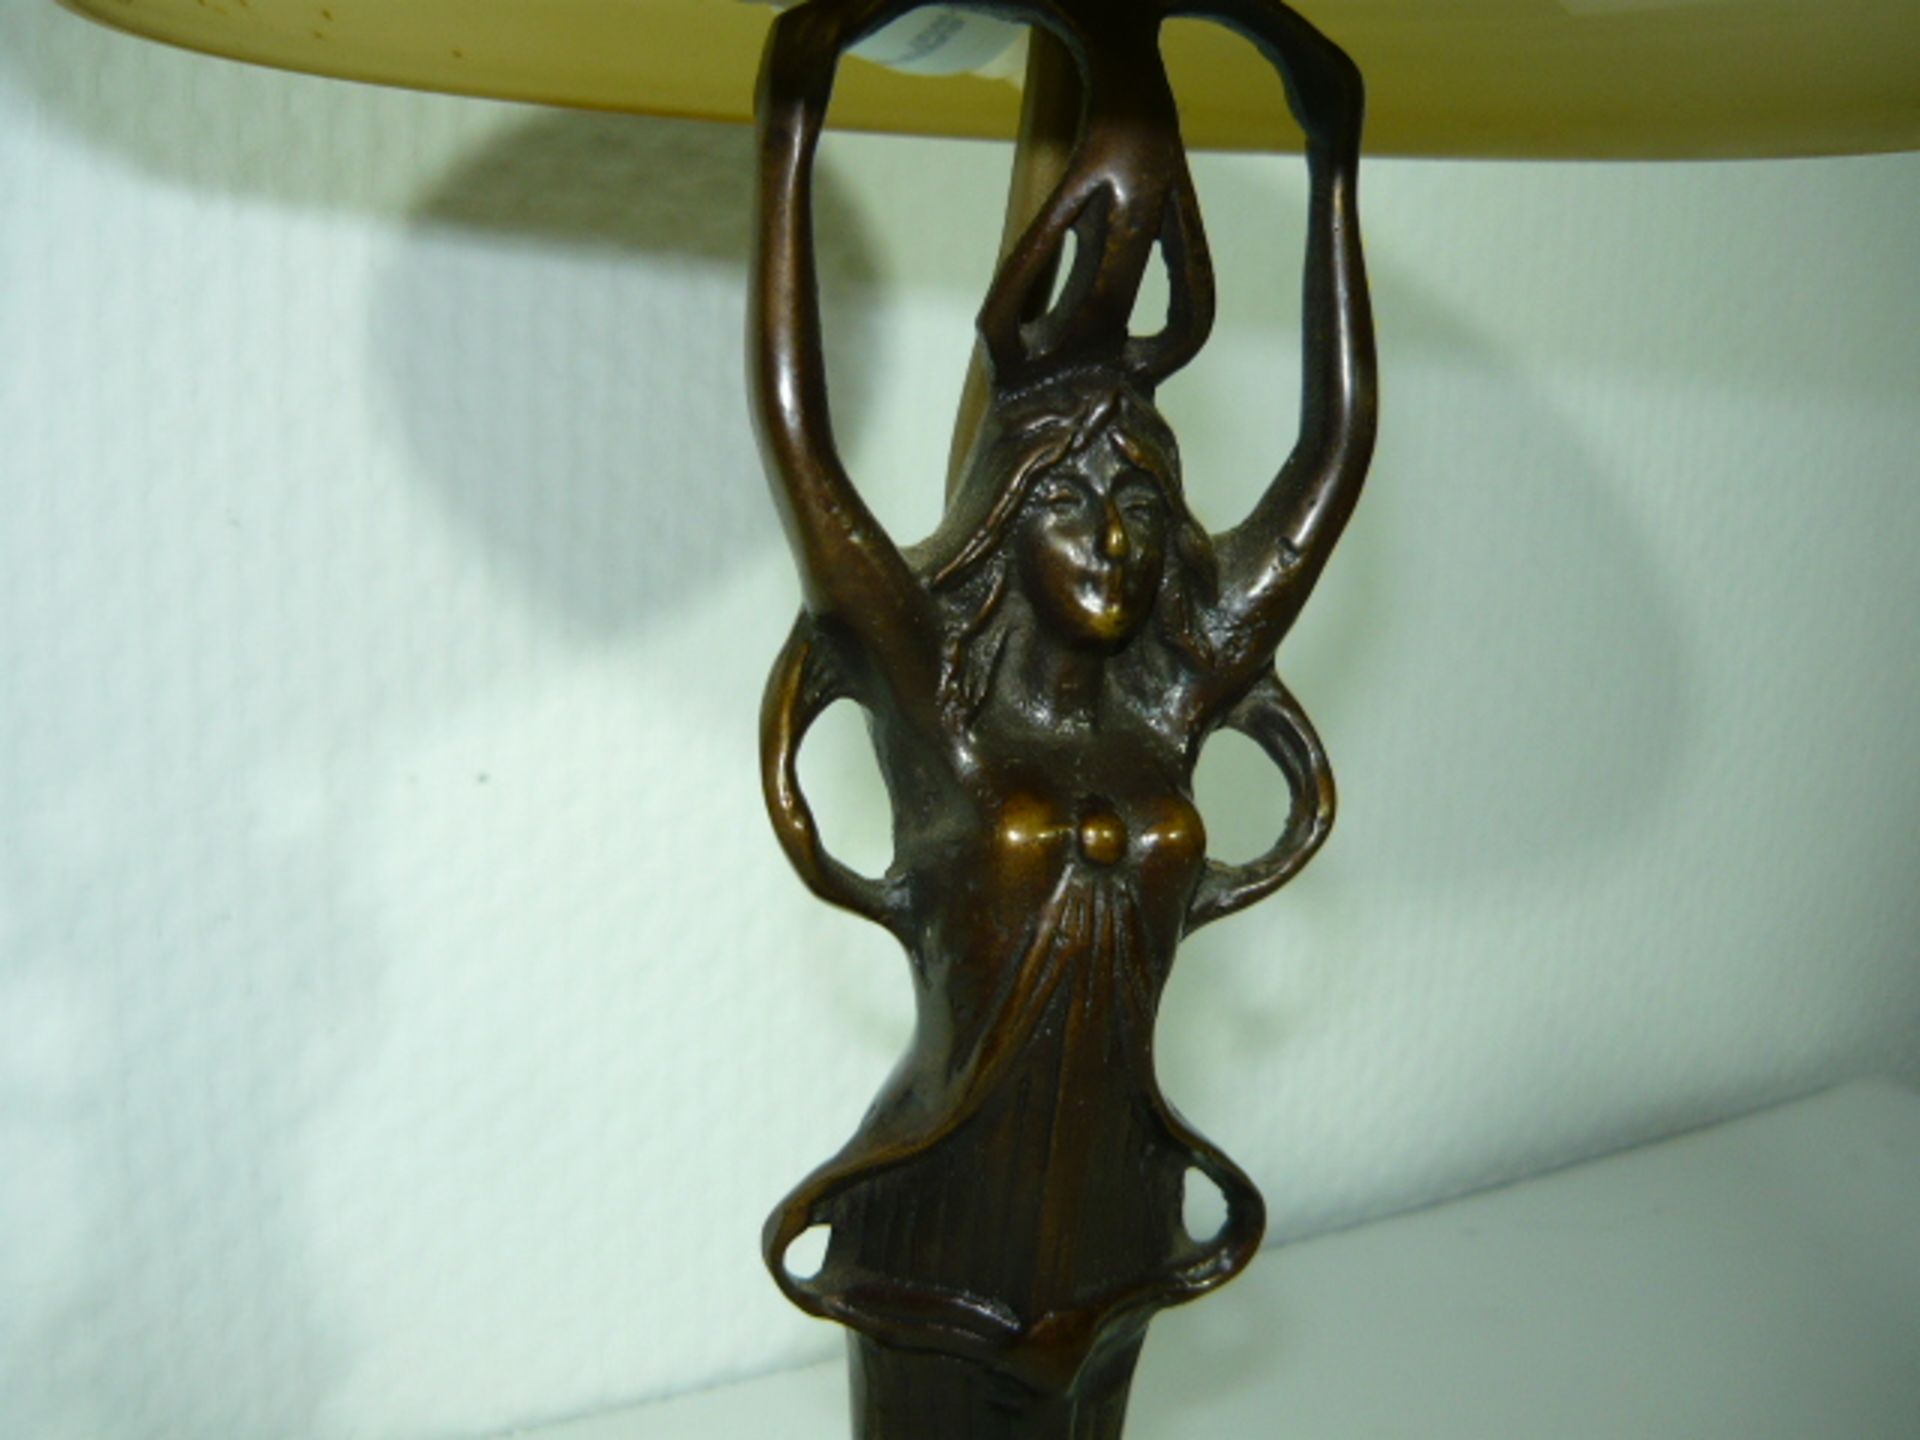 Tischlampe mit Glasschirm. Fuß in Form einer Frau im Jugendstil. Bronze. Lampe leuchtet. - Image 2 of 2